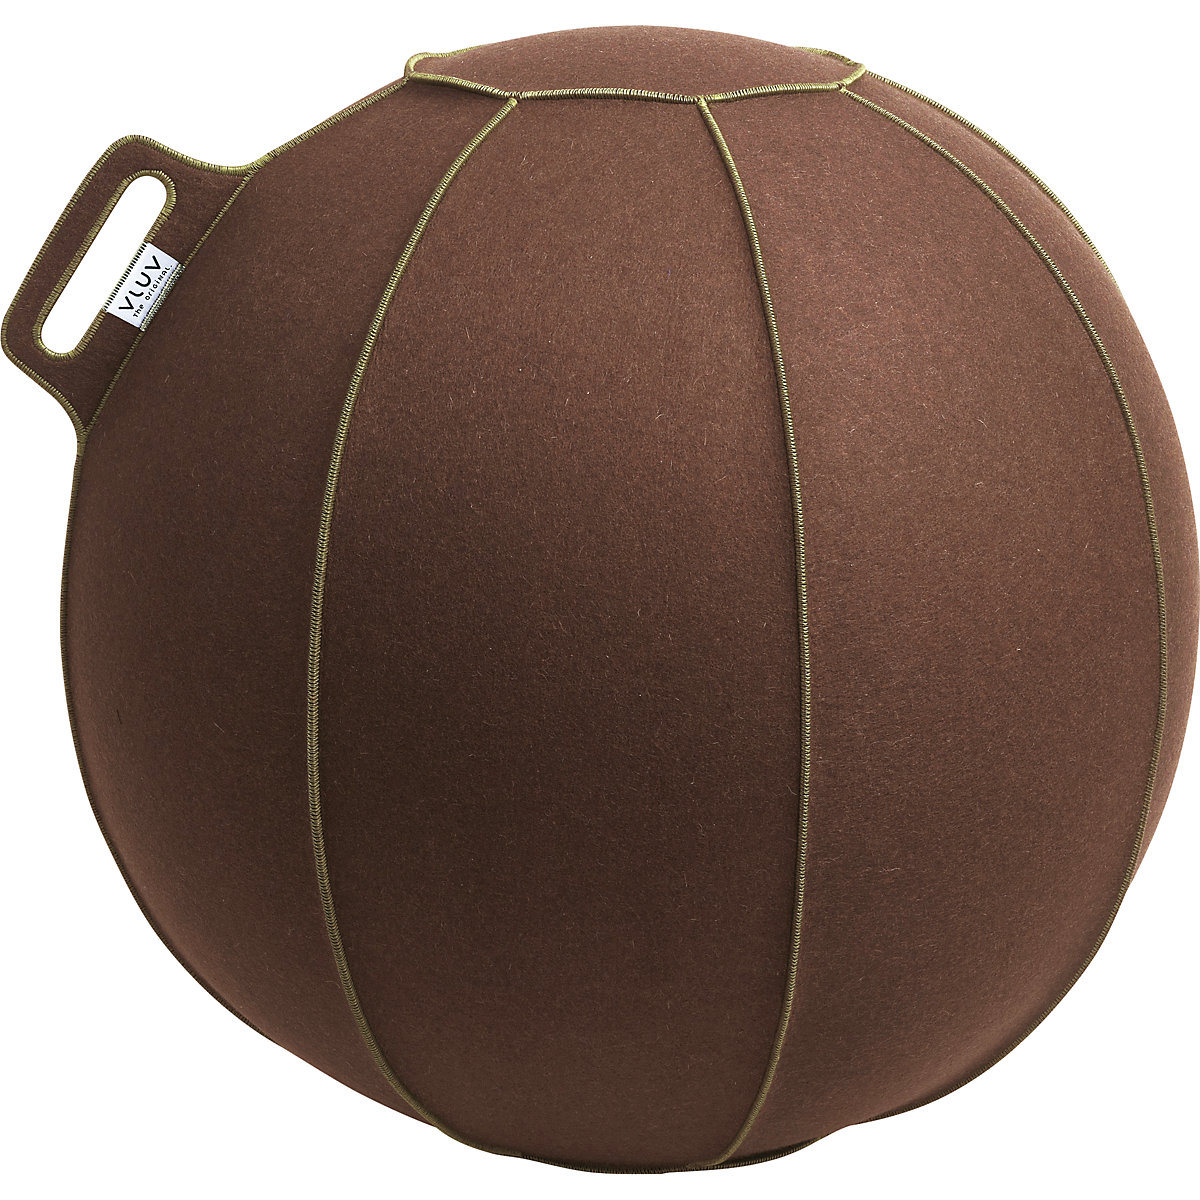 VELT Swiss ball – VLUV, made of merino wool felt, 700 – 750 mm, mottled brown/green-7